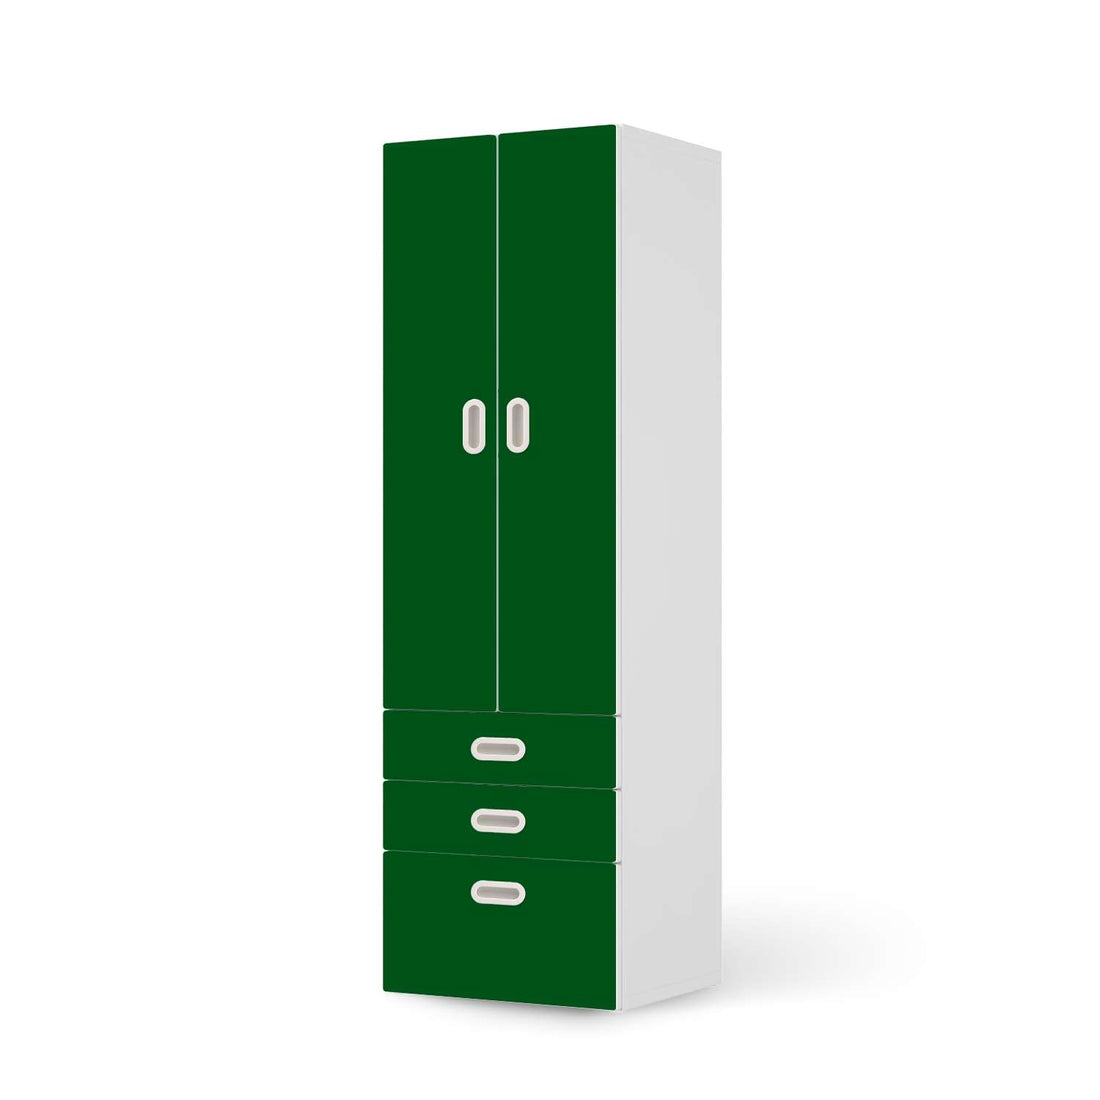 Klebefolie Grün Dark - IKEA Stuva / Fritids kombiniert - 3 Schubladen und 2 große Türen  - weiss